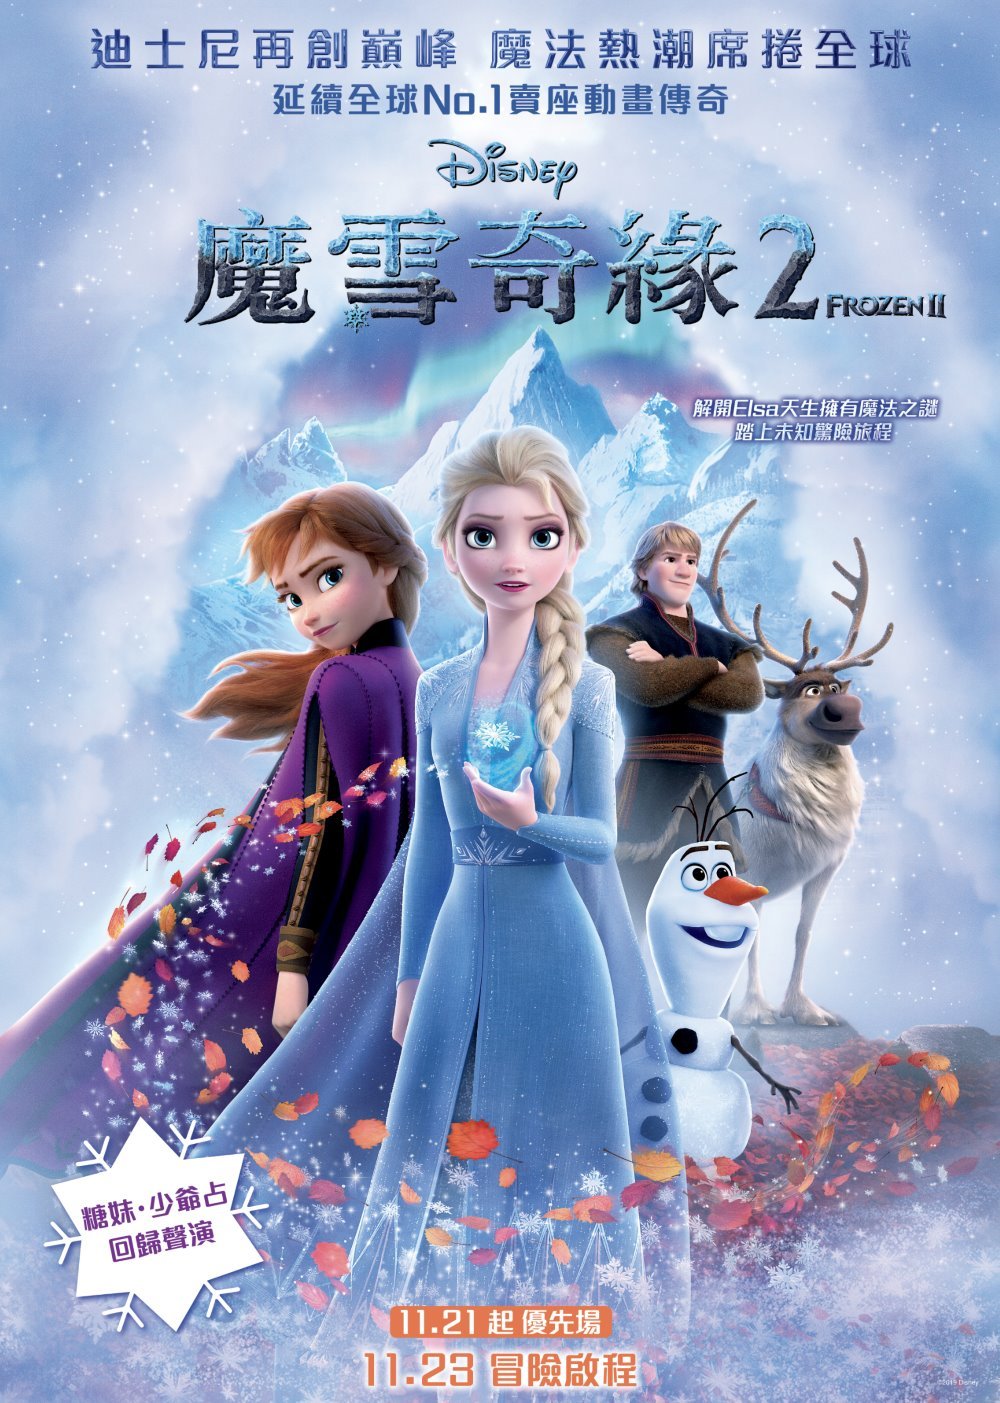 魔雪奇緣2 (2D 全景聲 粵語版)電影圖片 - Frozen2_HKPoster_1571659752.jpg